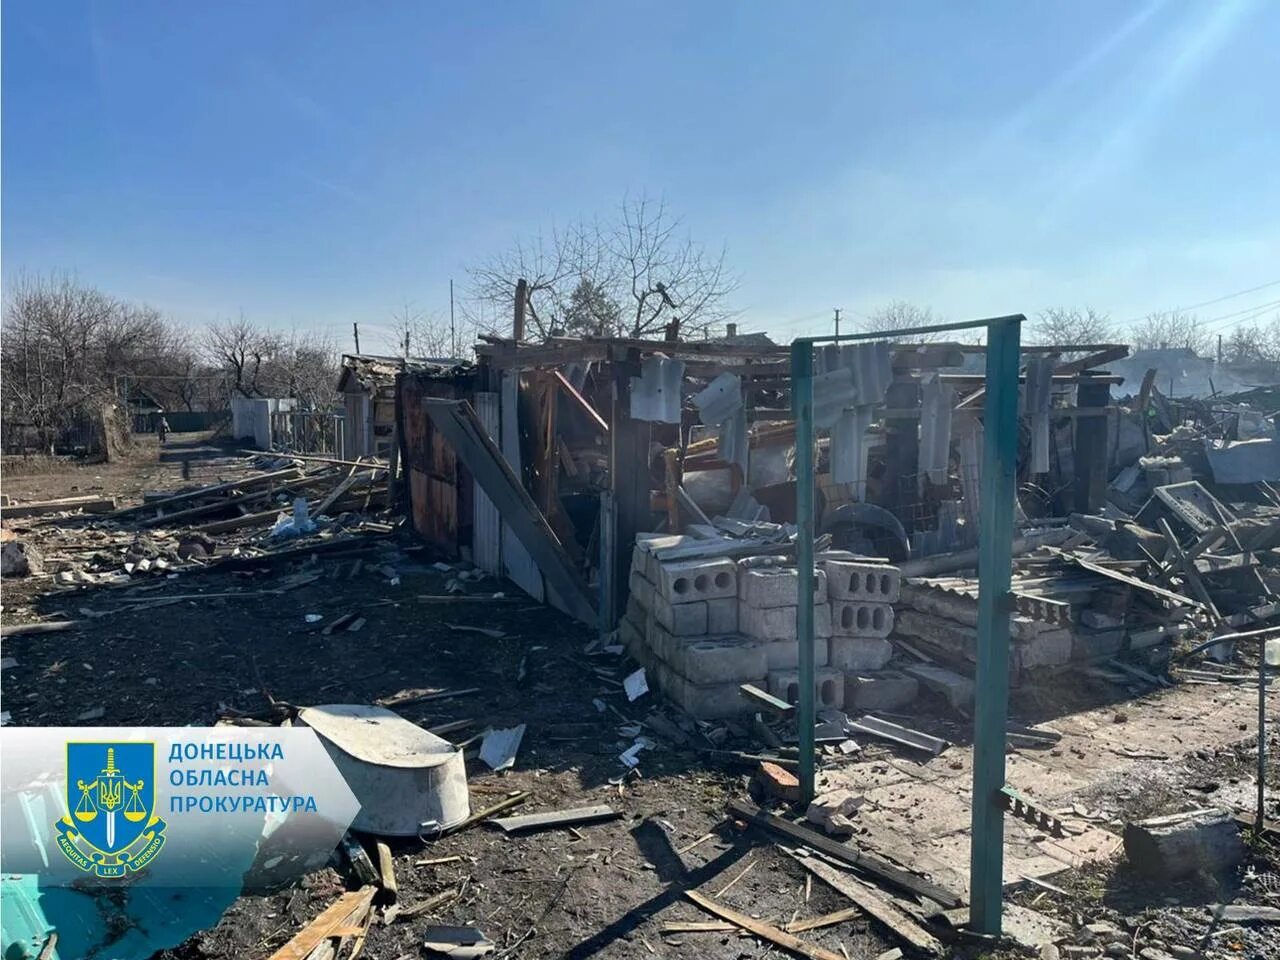 Ситуация в часов яре донецкой области сегодня. Разрушенные дома. Разрушенное здание. Донецк разрушения.